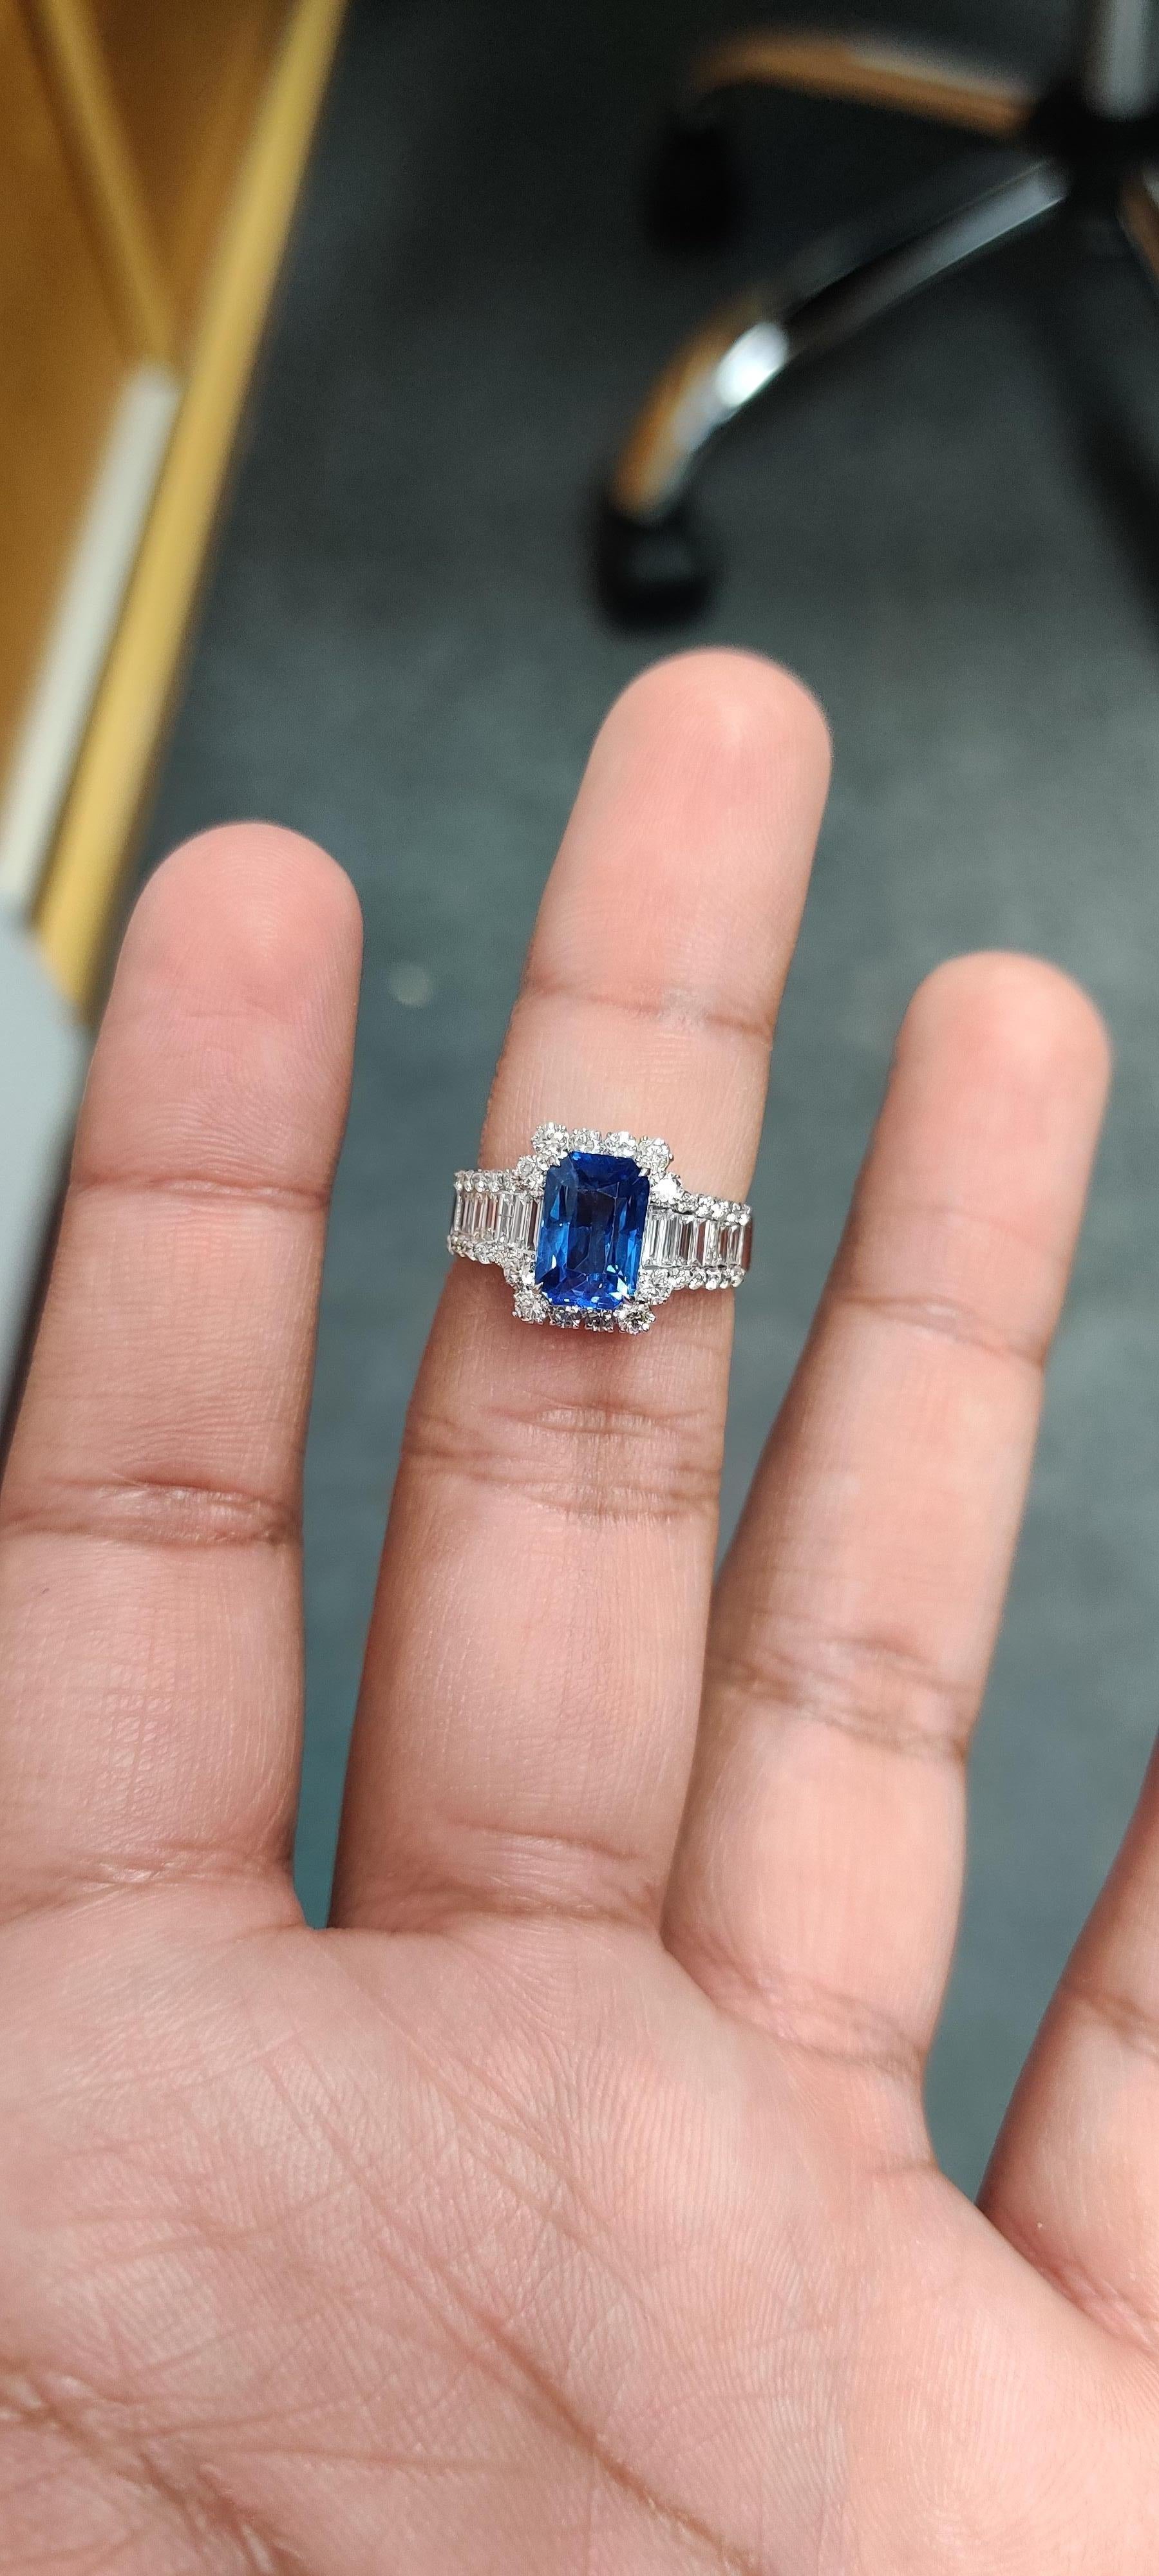 Wir präsentieren unseren wunderschönen 2,87 Karat Saphir-Ring! Er ist eine wahre Schönheit, die mit viel Liebe zum Detail gefertigt wurde. Das Herzstück ist ein atemberaubender Saphir, der von schimmernden Diamanten umgeben ist, die alle auf einem